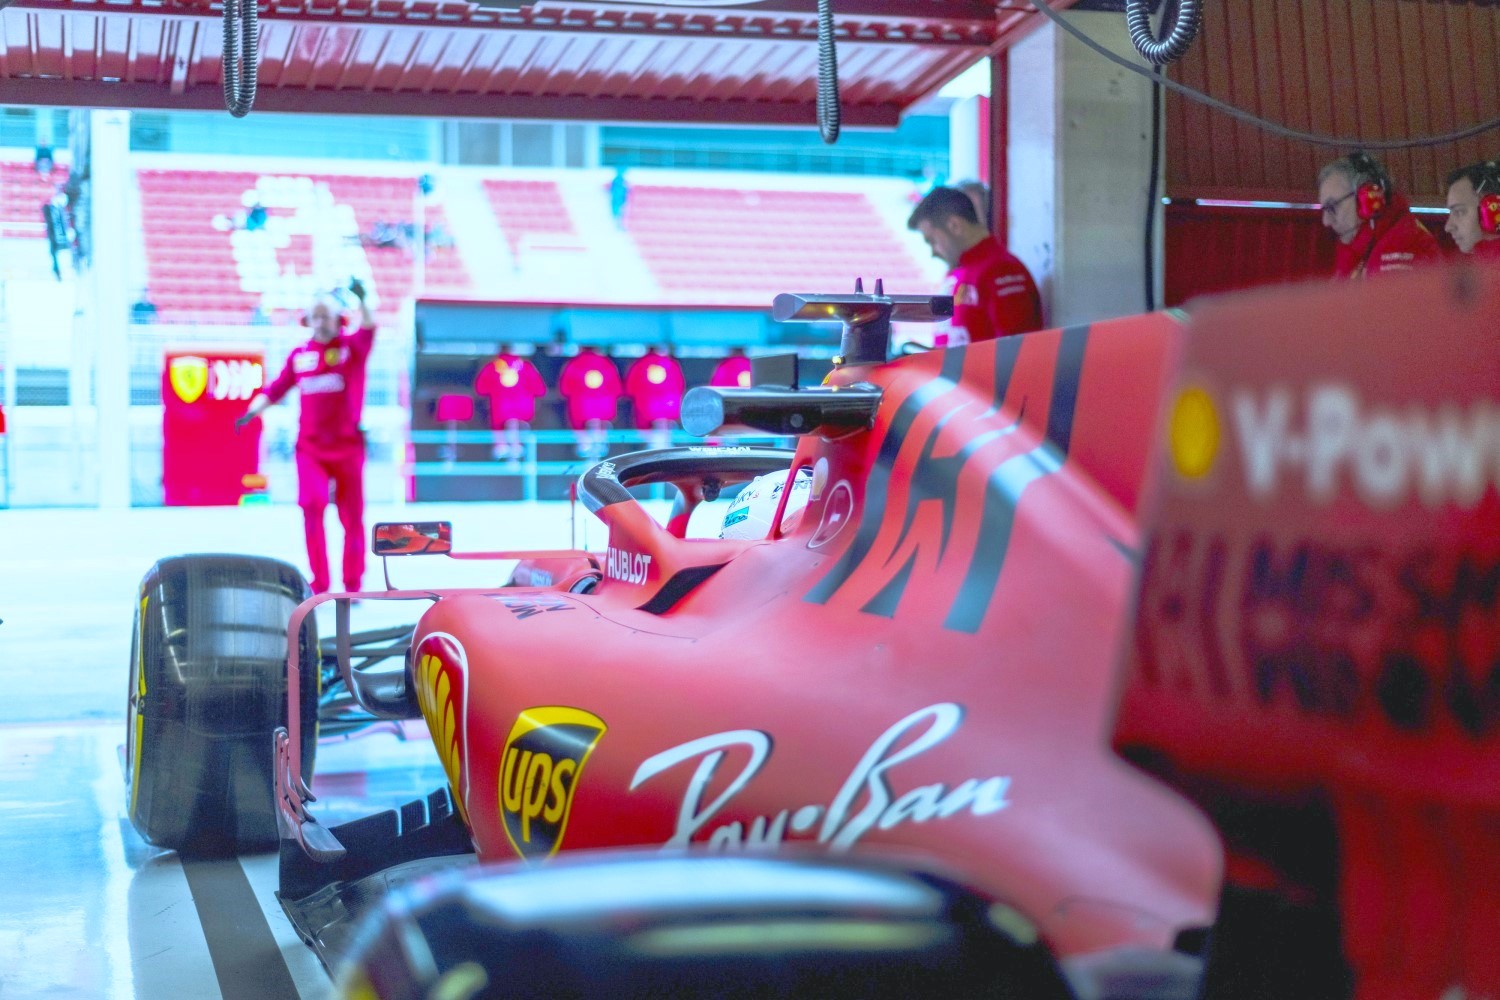 What's in that Ferrari fuel?